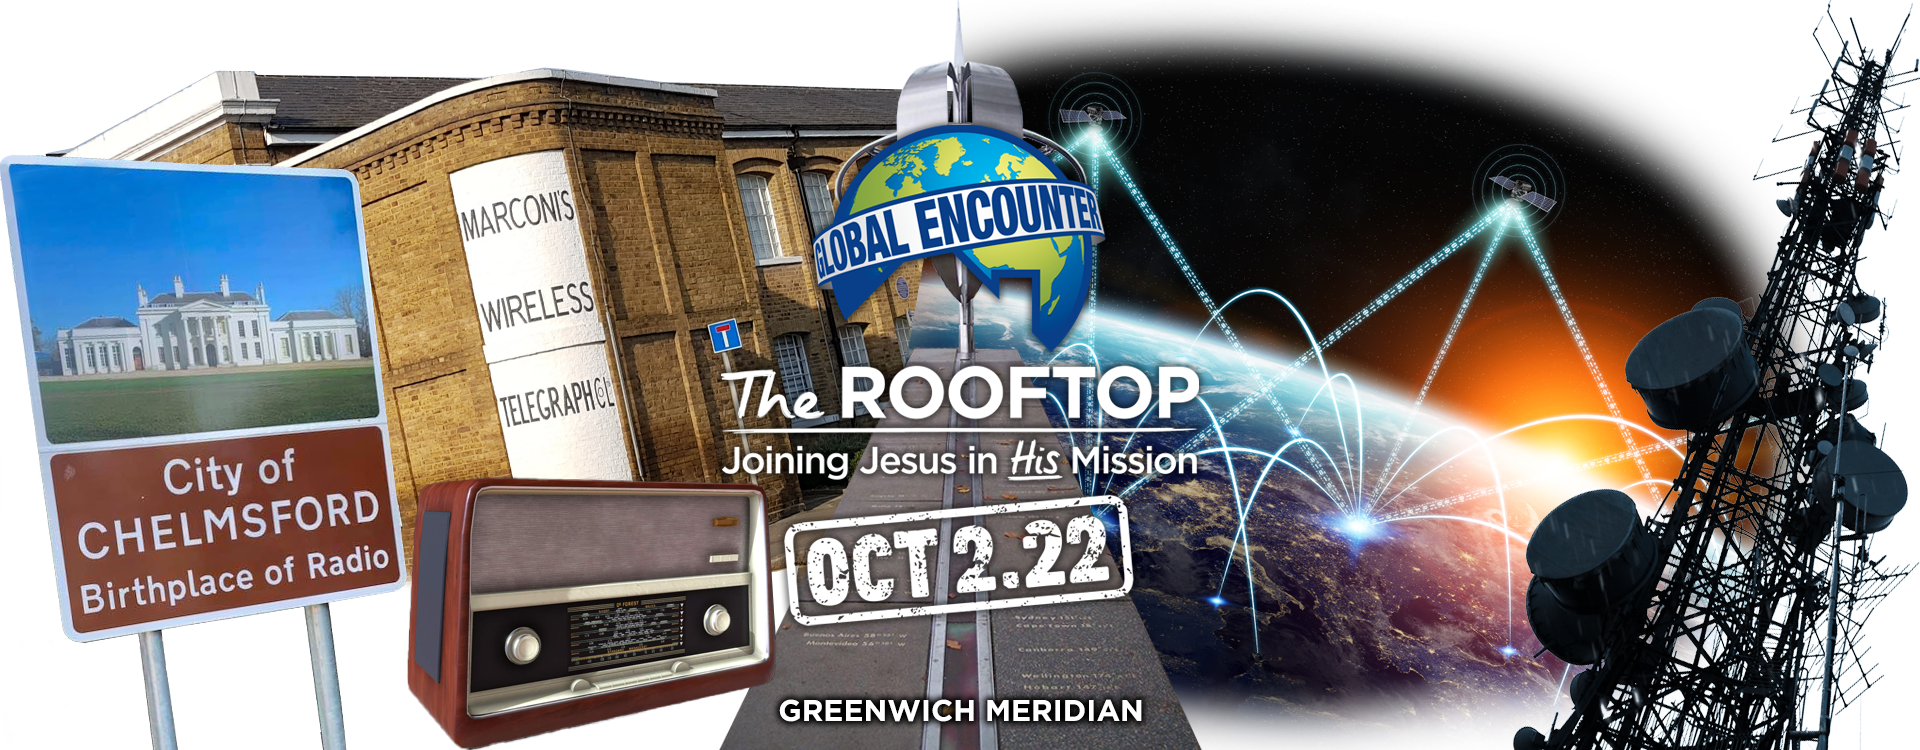 Rooftop global encounter image